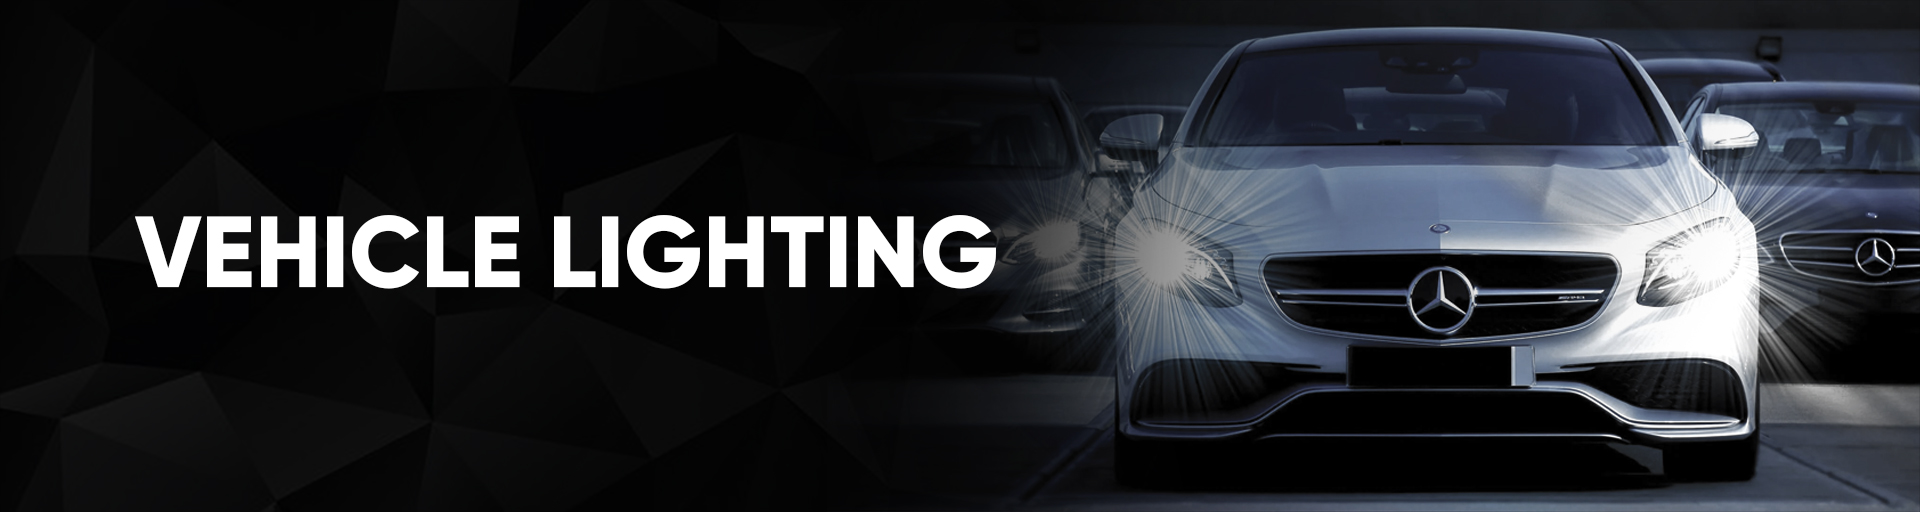 vehicle lighting